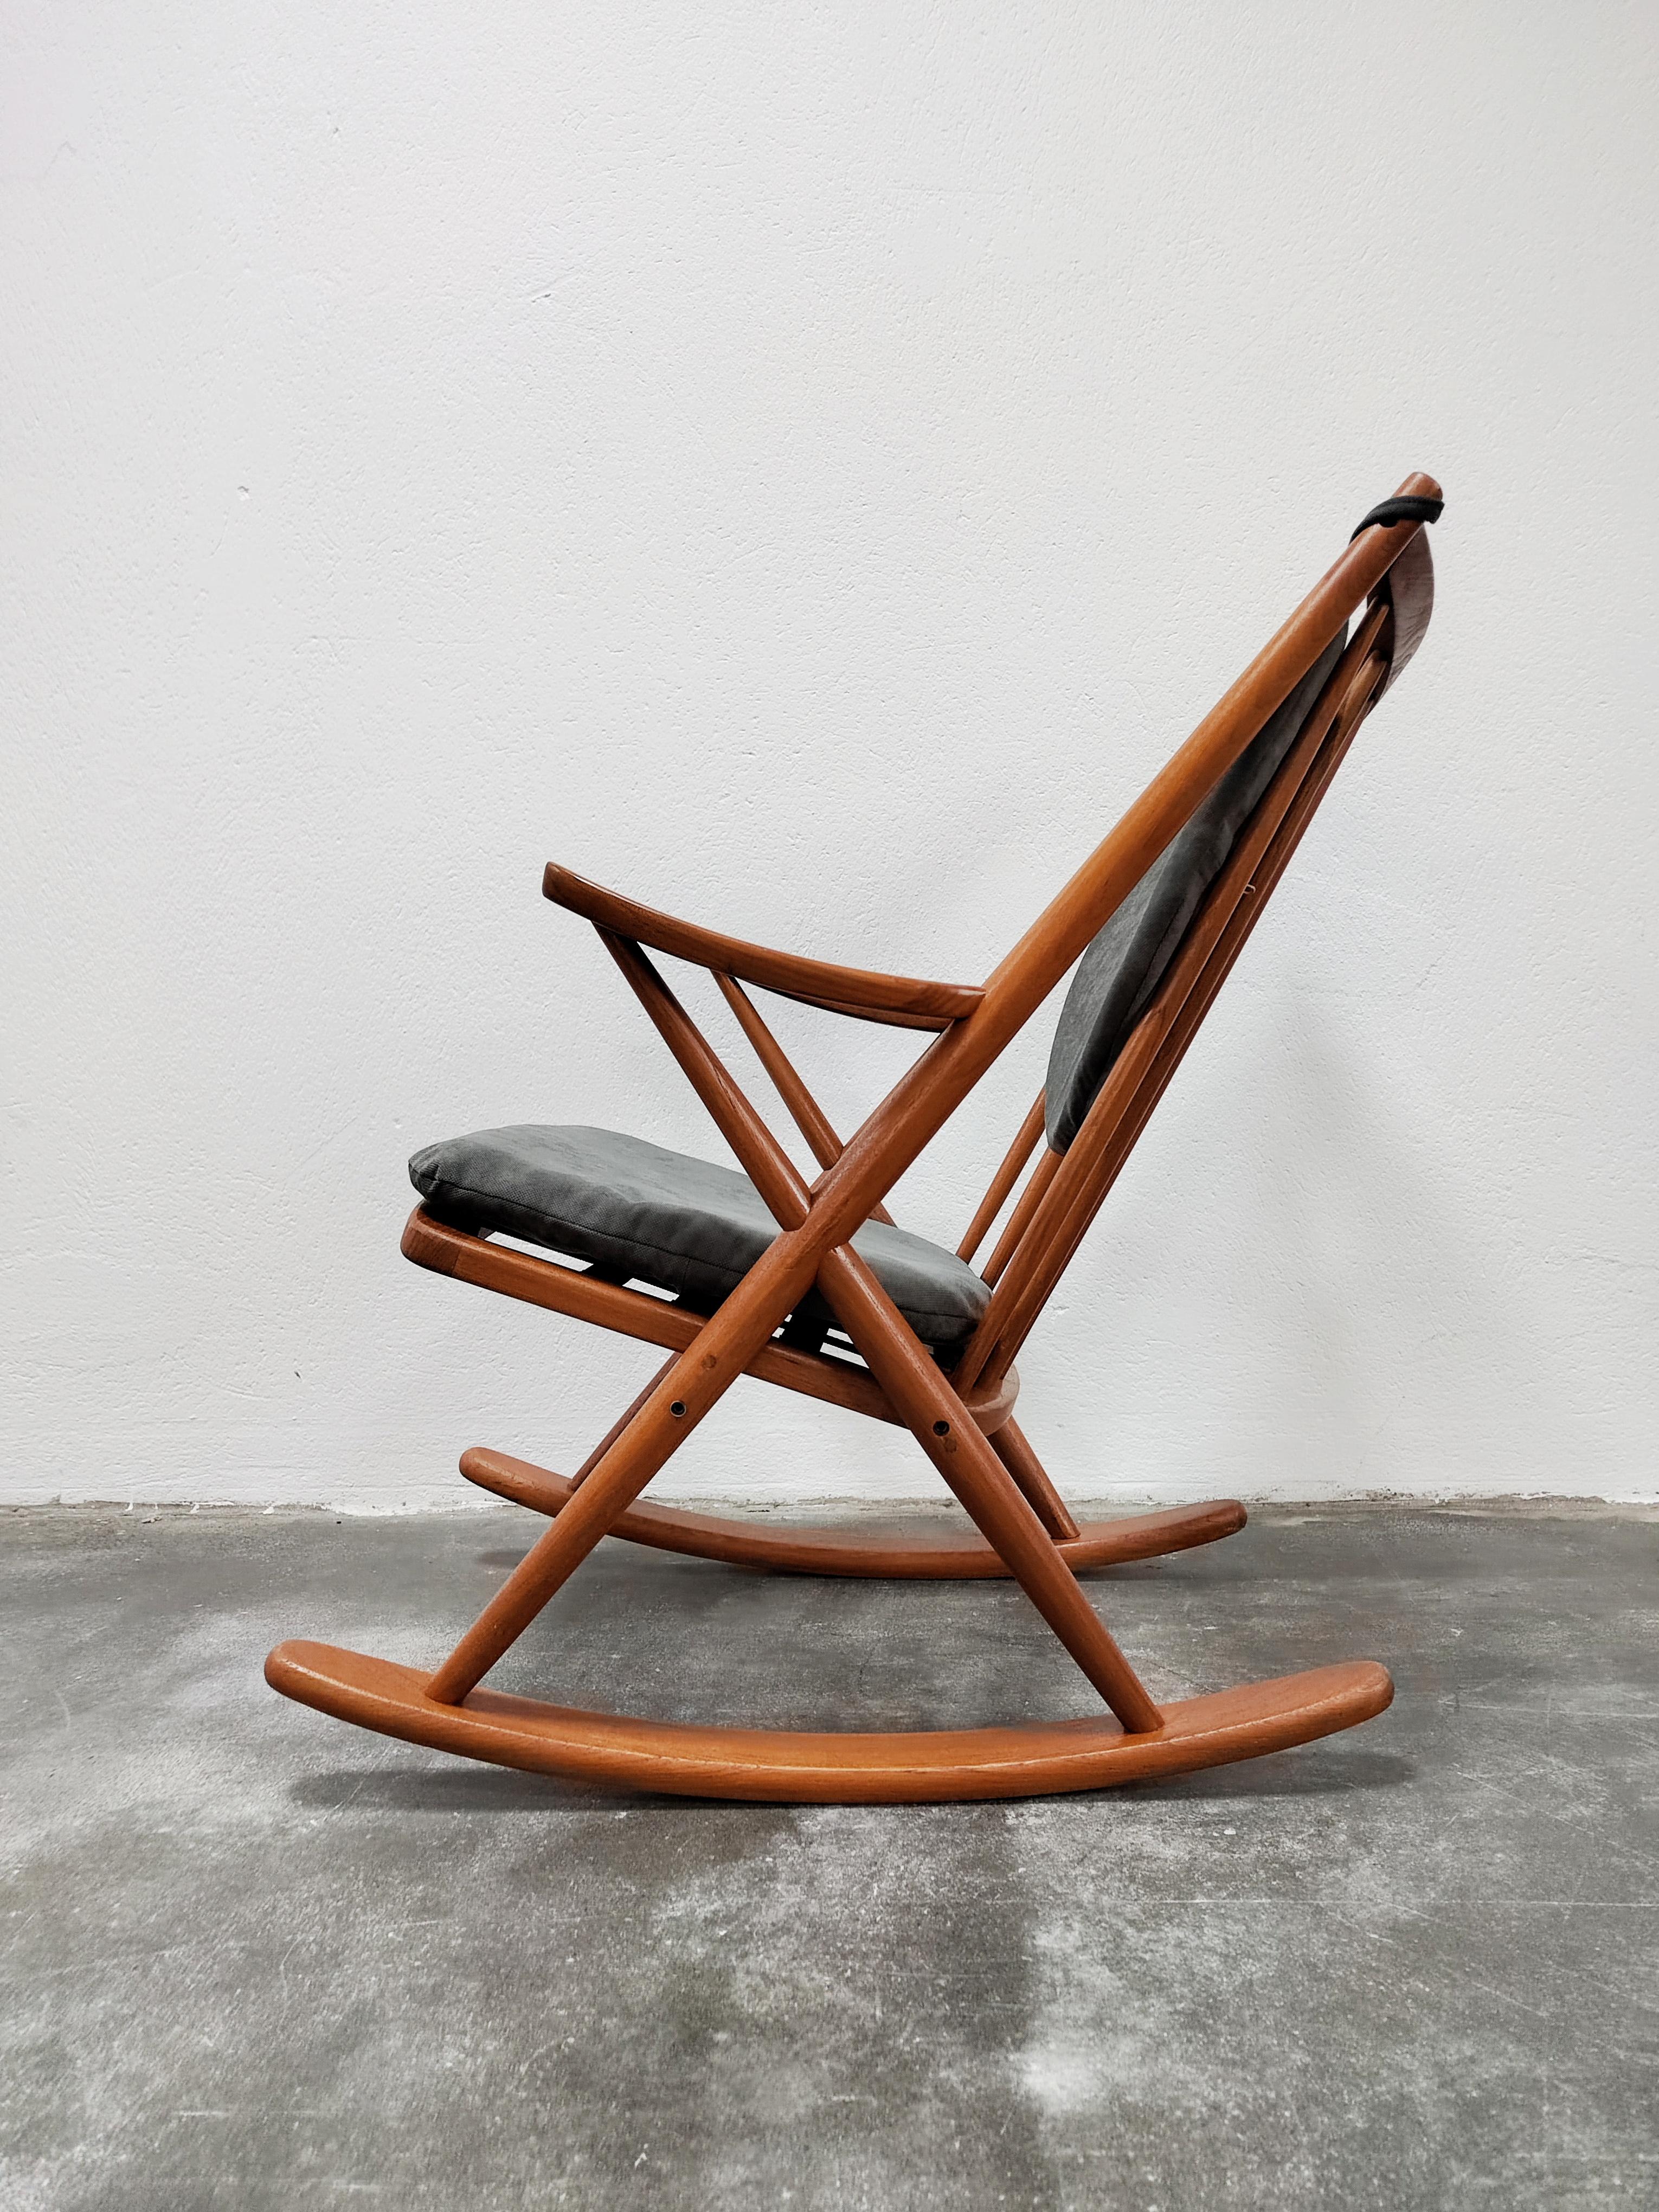 Dans cette annonce, vous trouverez un magnifique fauteuil à bascule Mid-Century Modern conçu par Frank Reenskaug pour Bramin Mobler. Le fauteuil à bascule est réalisé en bois de teck massif. Il a été récemment nettoyé par l'envoi et a reçu une